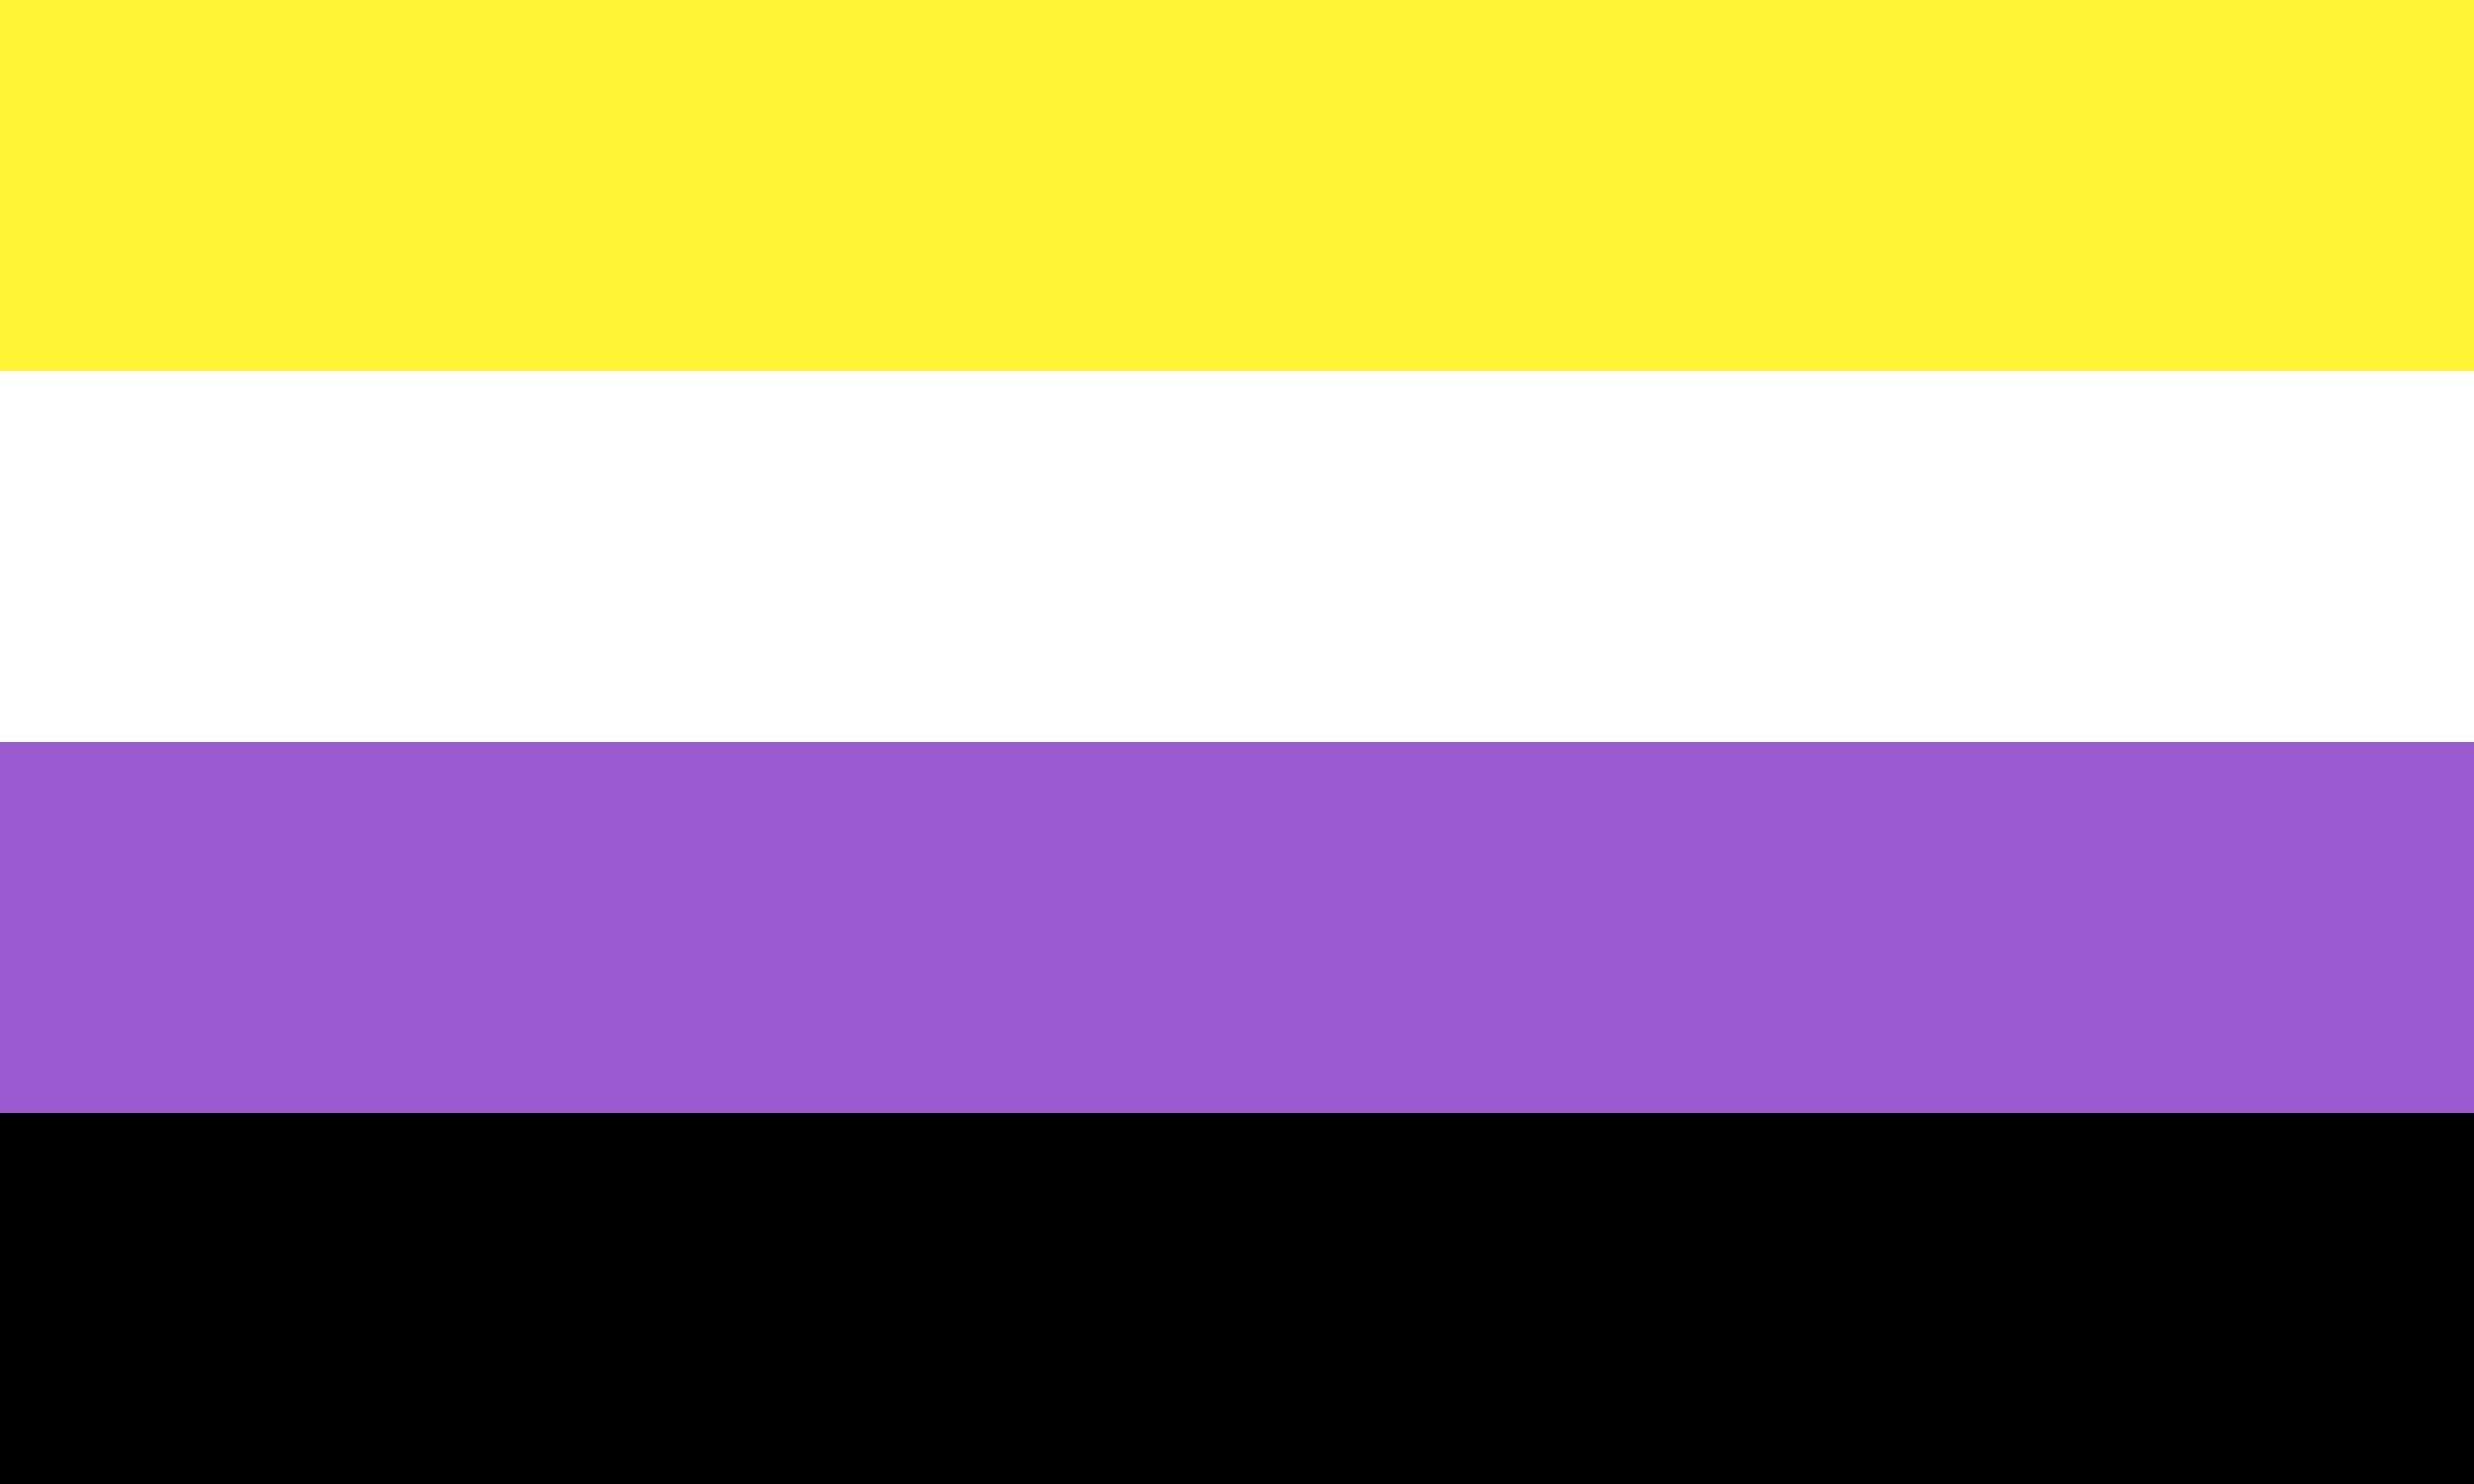 Com qual sigla suas respostas se identifica na Bandeira LGBT?